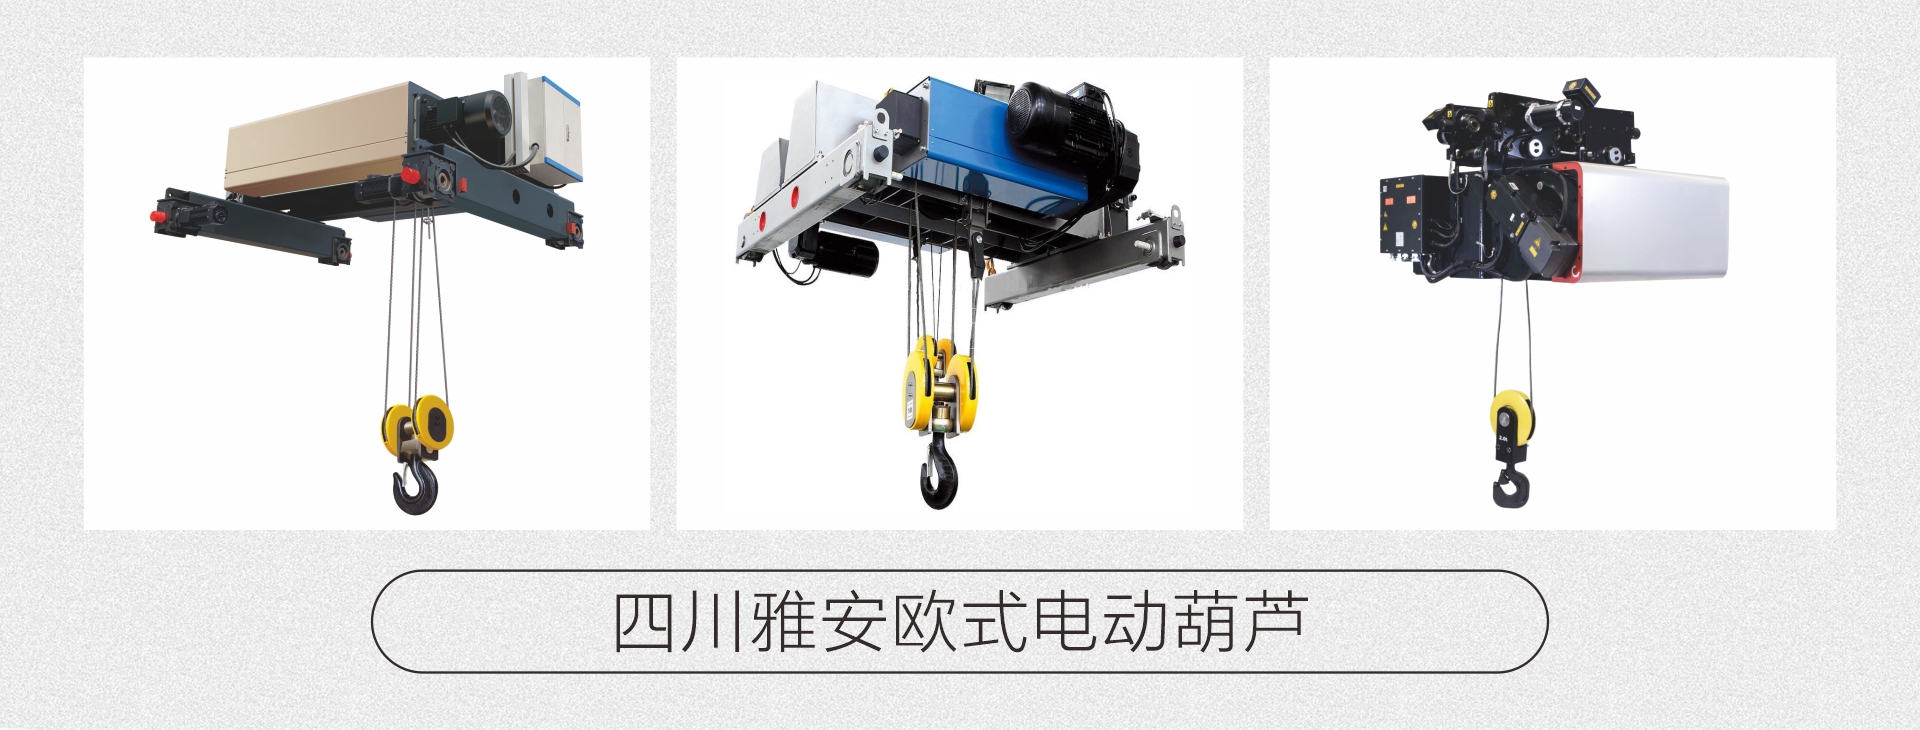 四川雅安专业生产起重设备